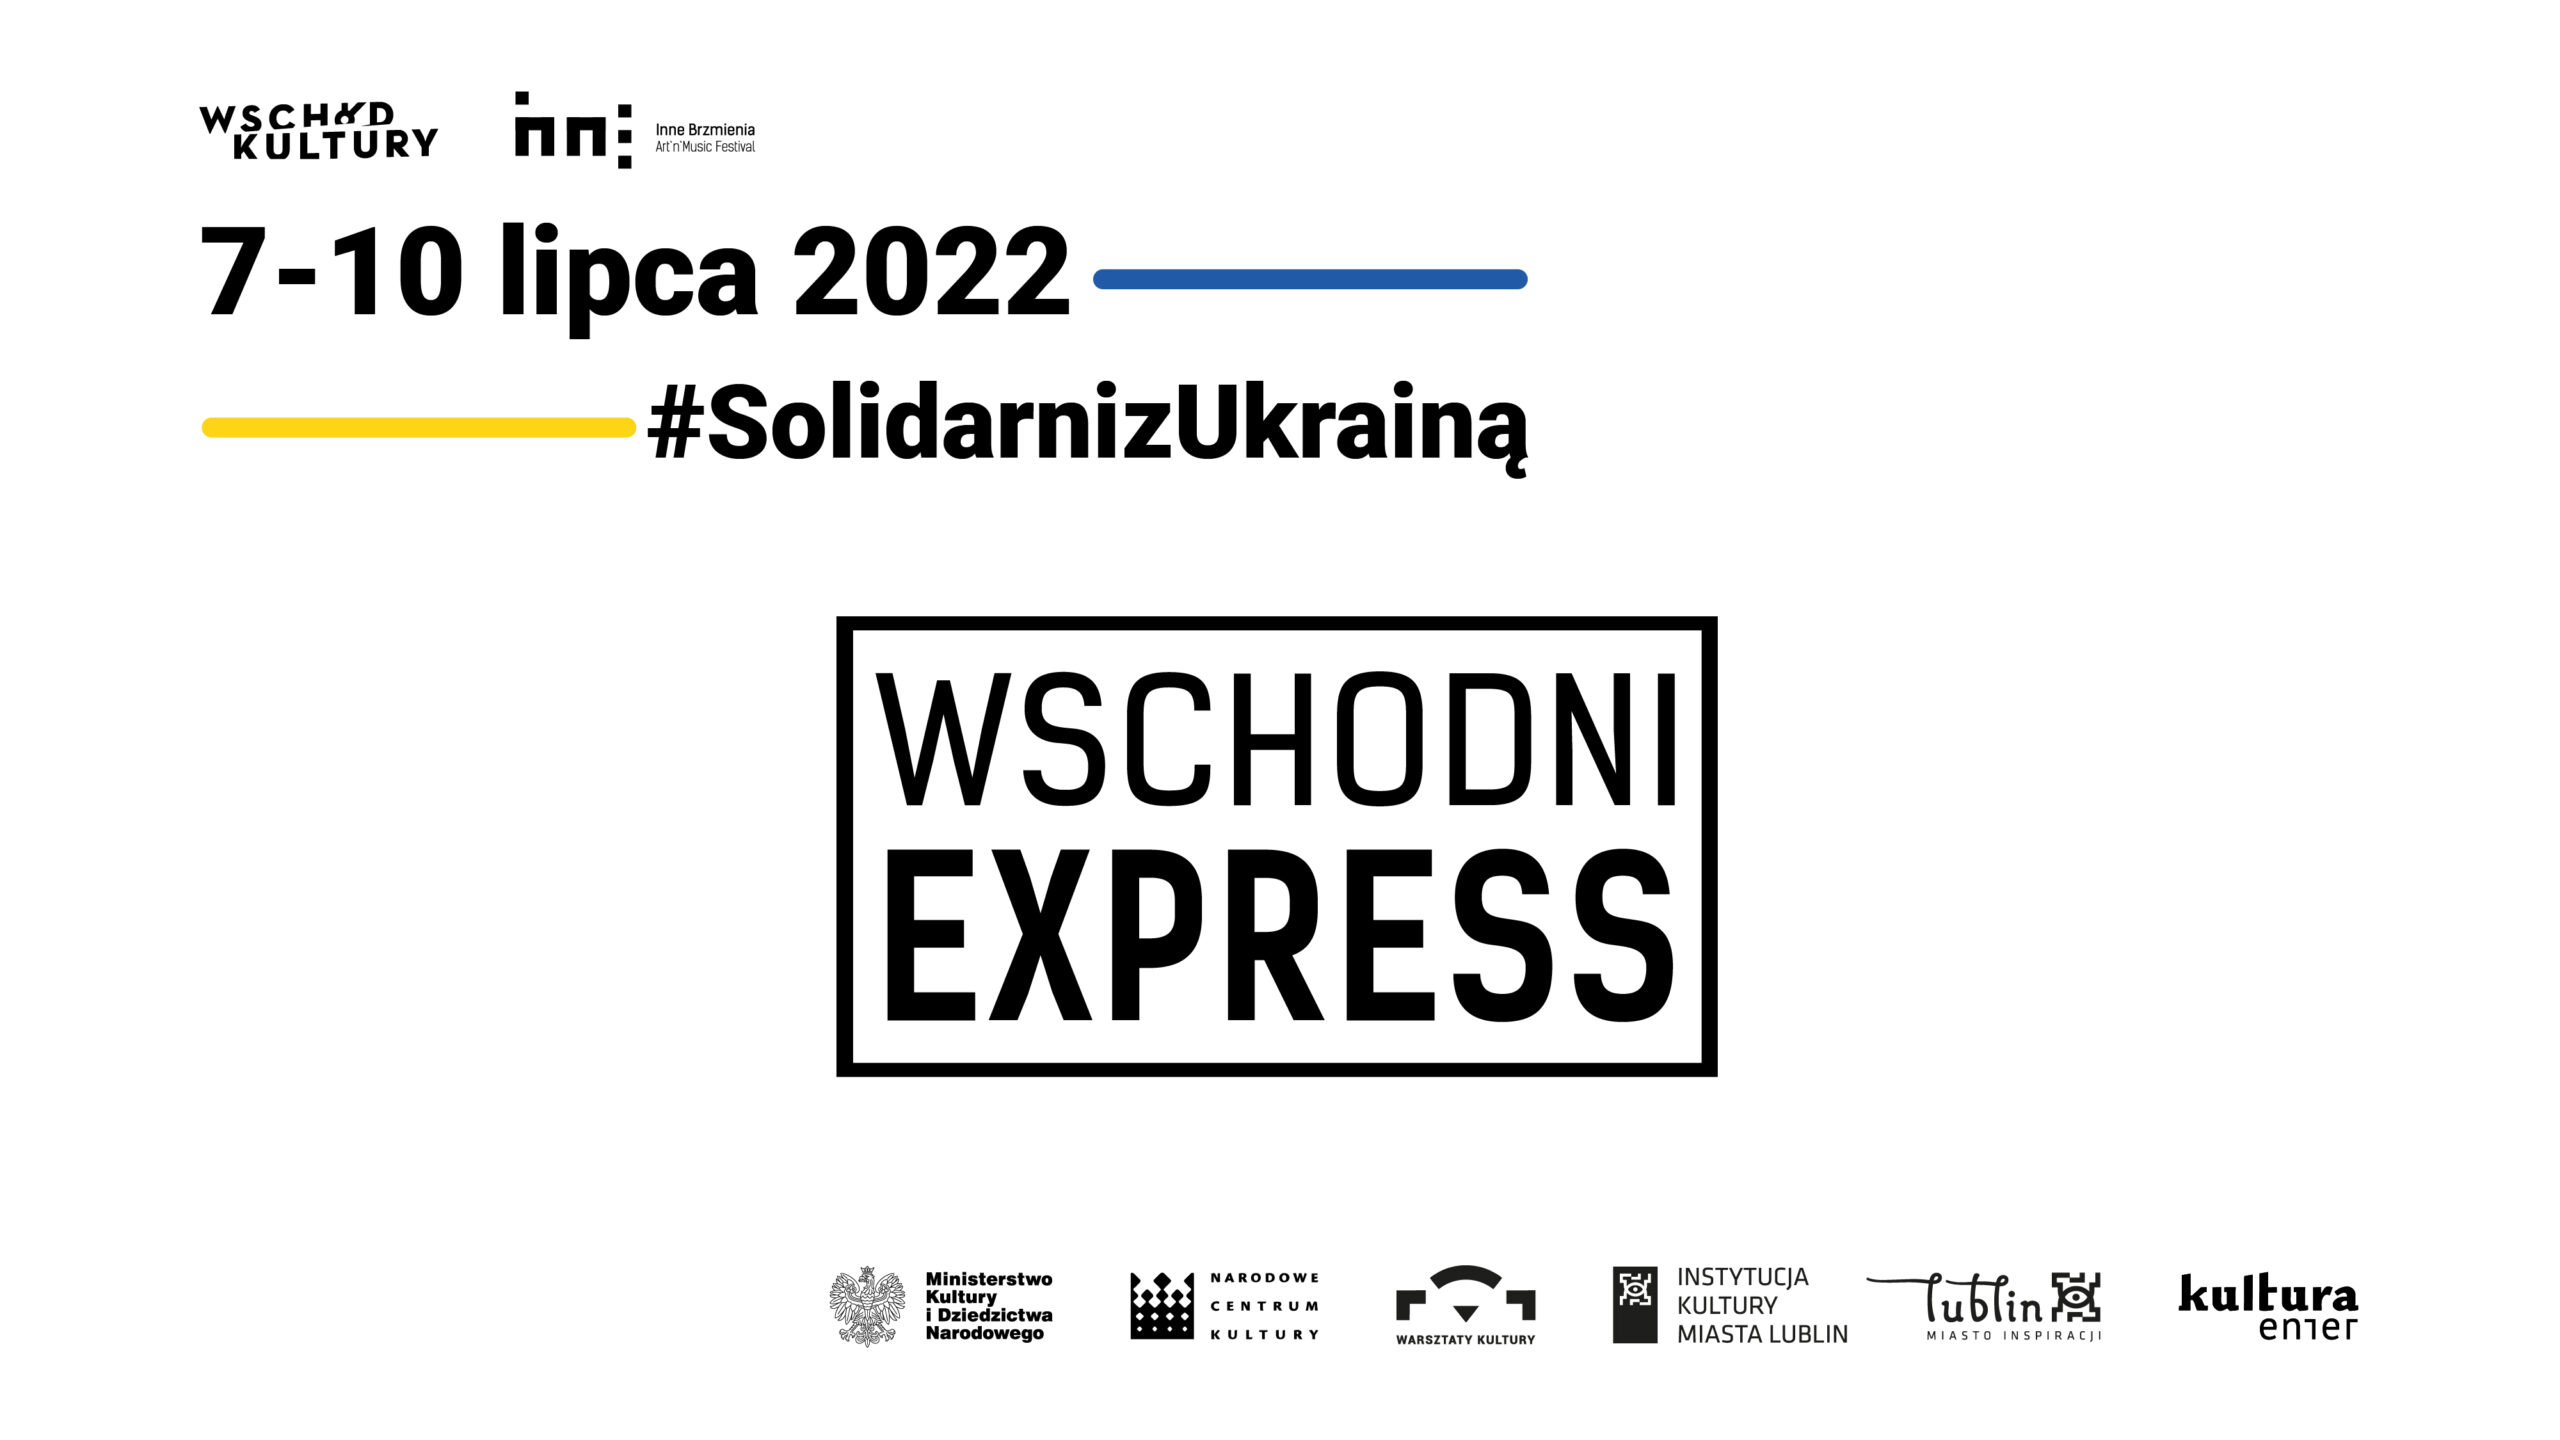 Plansza informacyjna o festiwalu Wschodni Express w dniach 7-10 lipca. Na środku duży napis Wschodni Express. Kolory flagi ukrainy (Niebieski i żółty) wypisani organizatorzy oraz #solidarnizukrainą